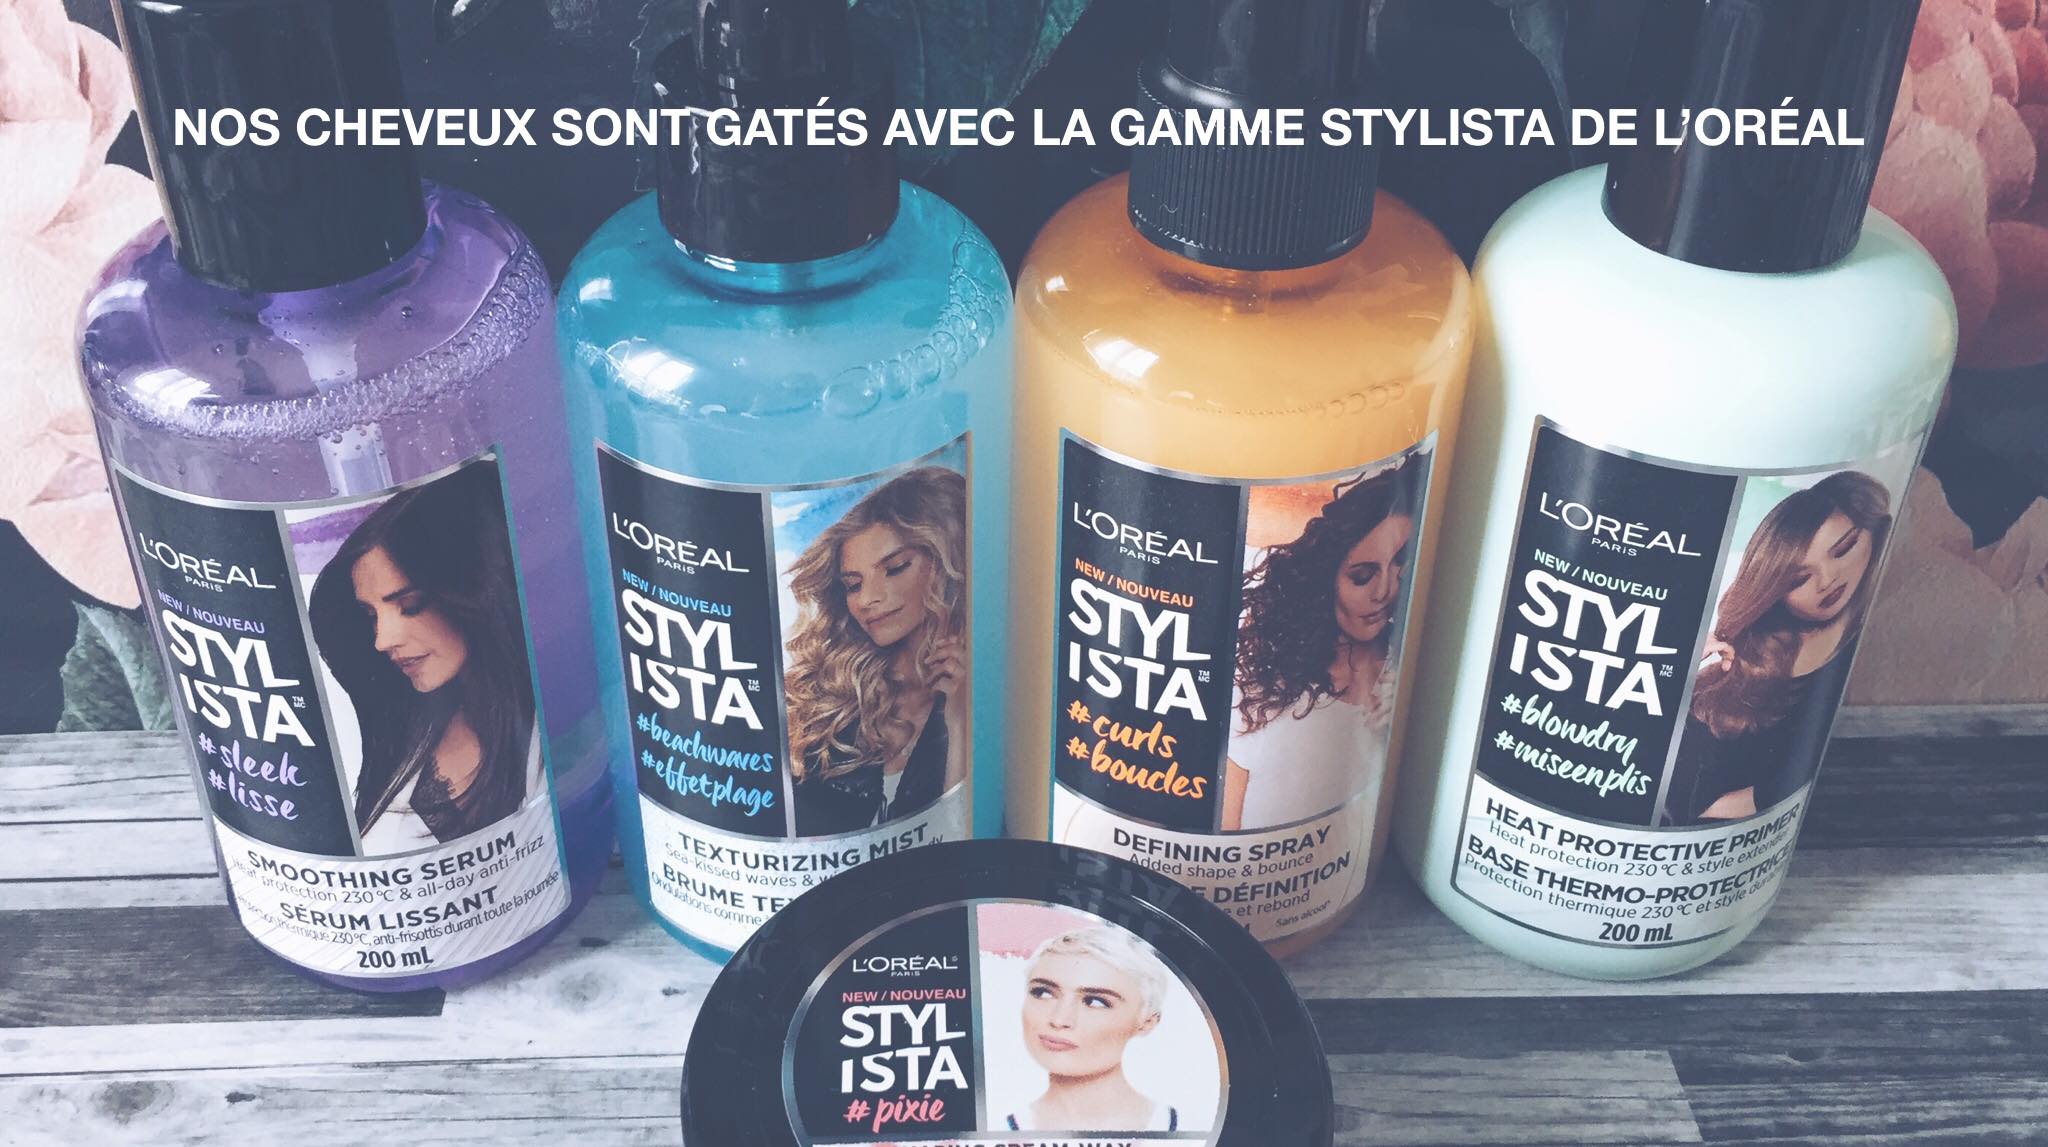 Présentation de la gamme Stylista par L'Oréal en collaboration avec Jean Coutu.